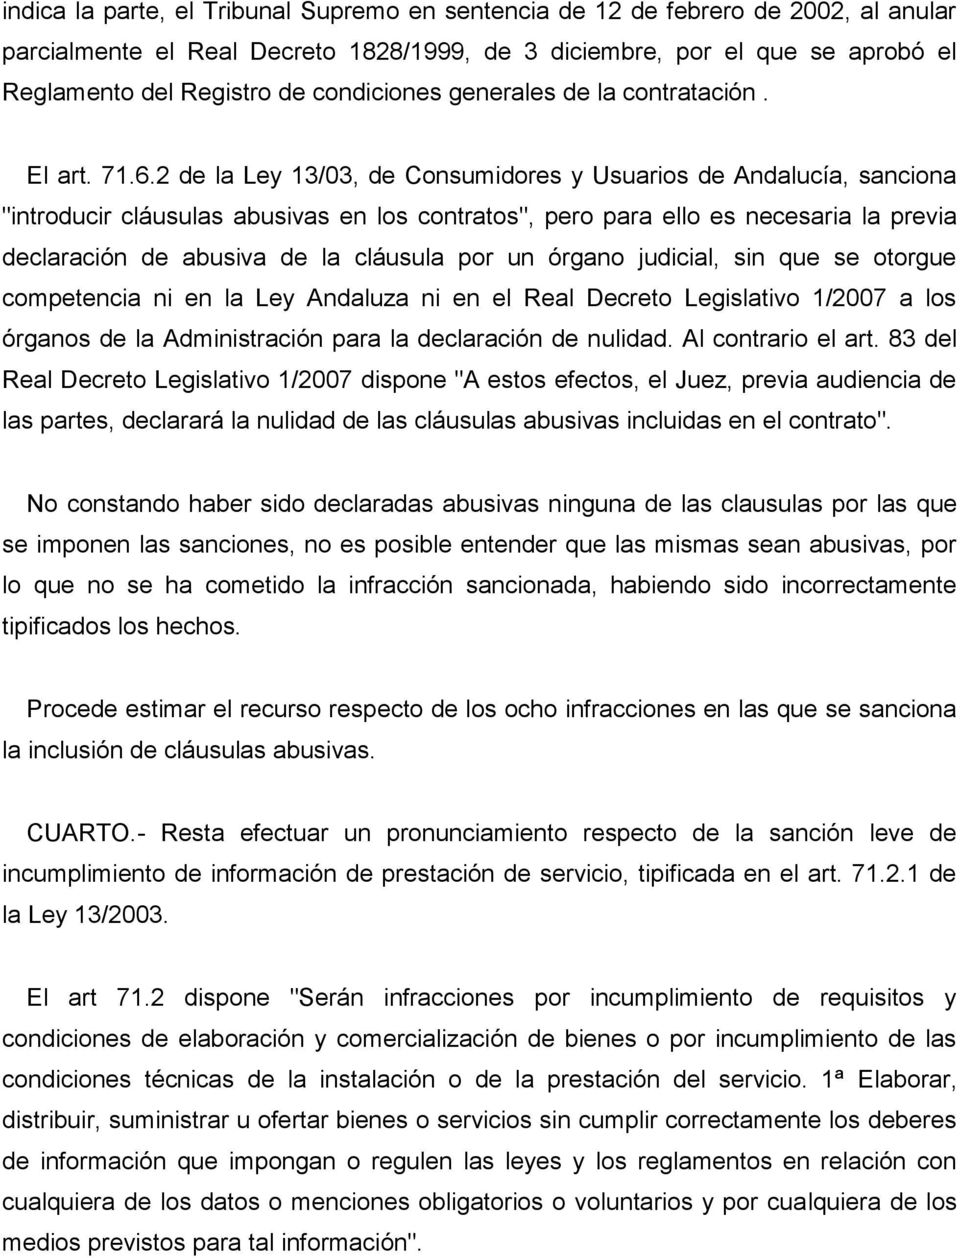 2 de la Ley 13/03, de Consumidores y Usuarios de Andalucía, sanciona "introducir cláusulas abusivas en los contratos", pero para ello es necesaria la previa declaración de abusiva de la cláusula por